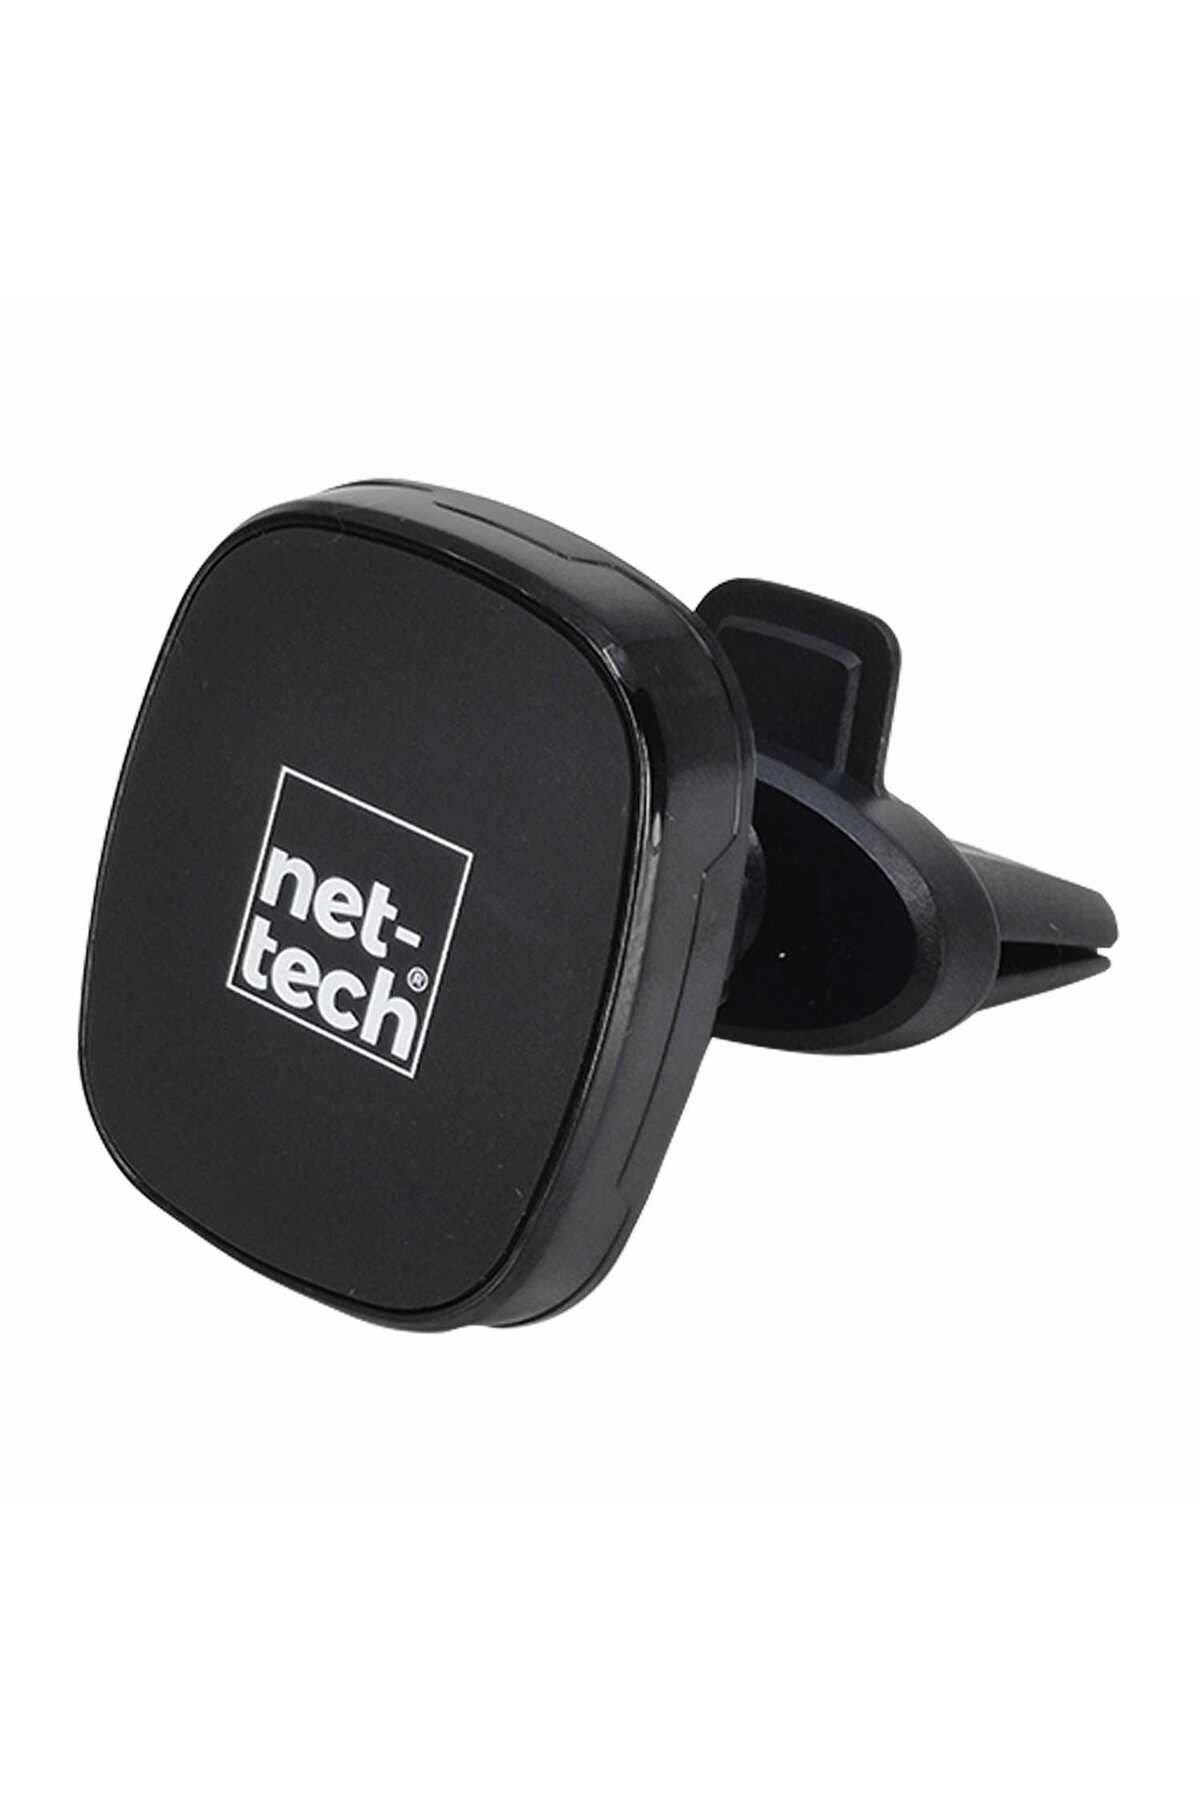 Nettech Nt-chc14 Araç Içi Mıknatıslı Klima Üstü Telefon Tutucu